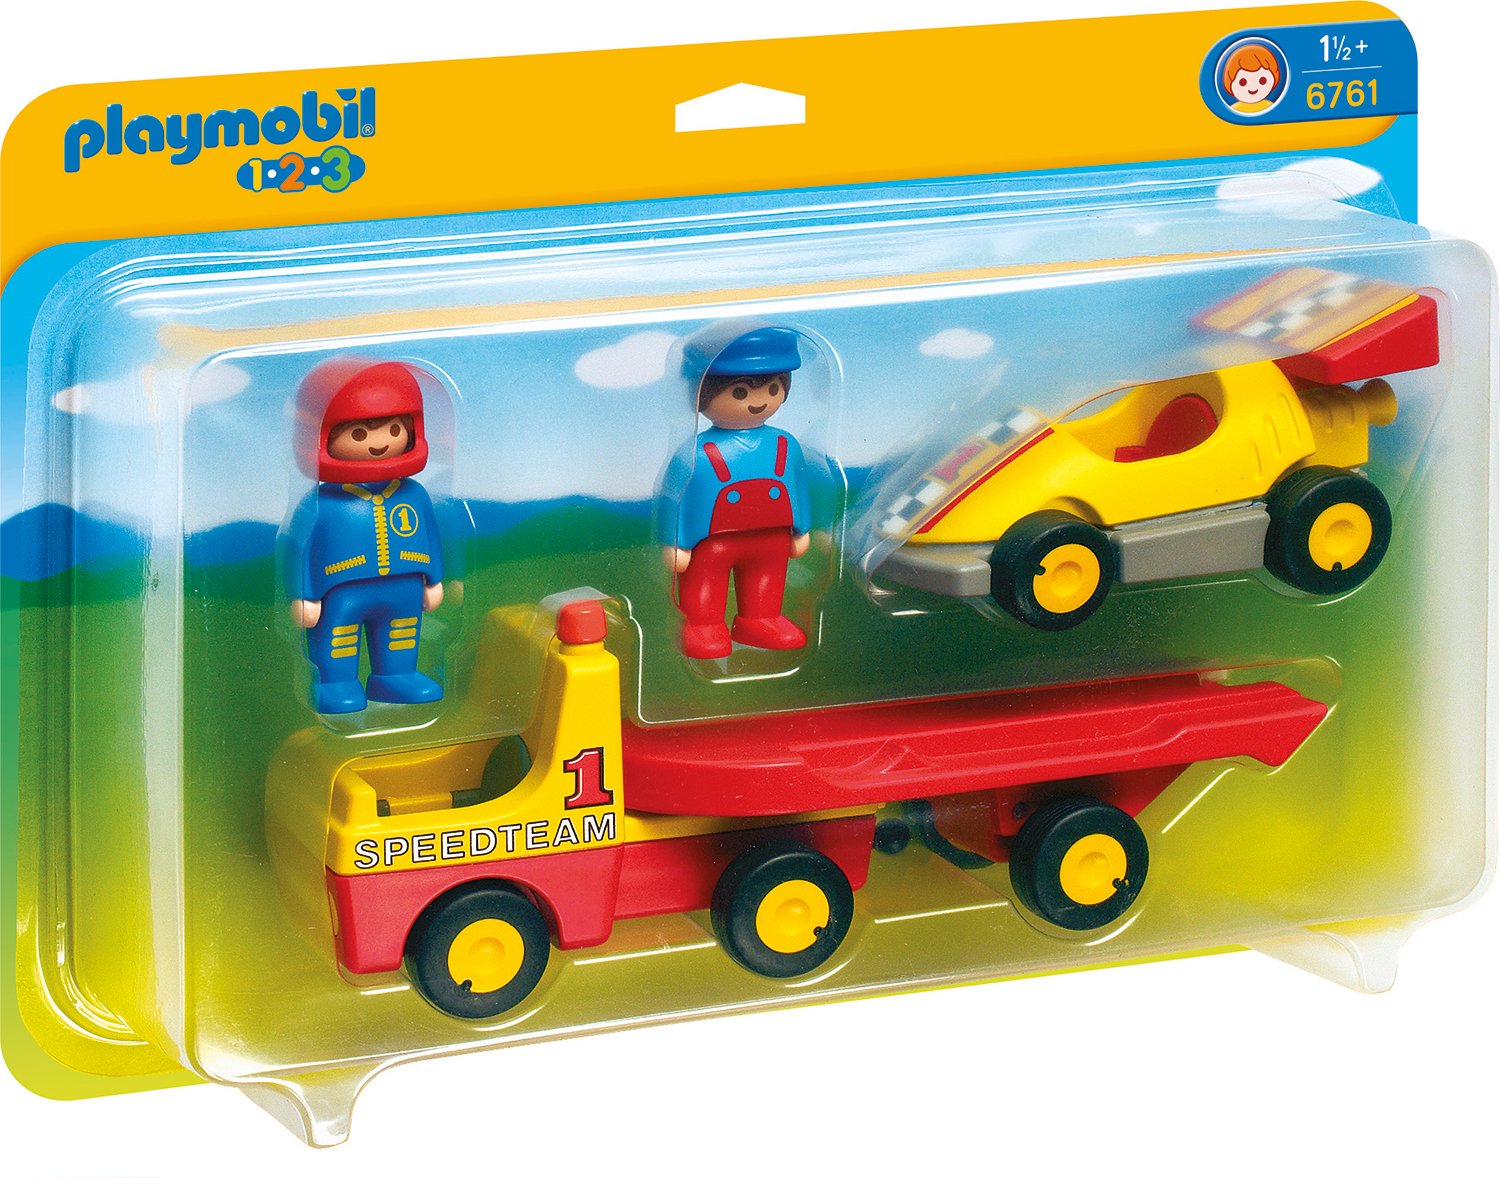 Playmobil Racing Car With Transporter